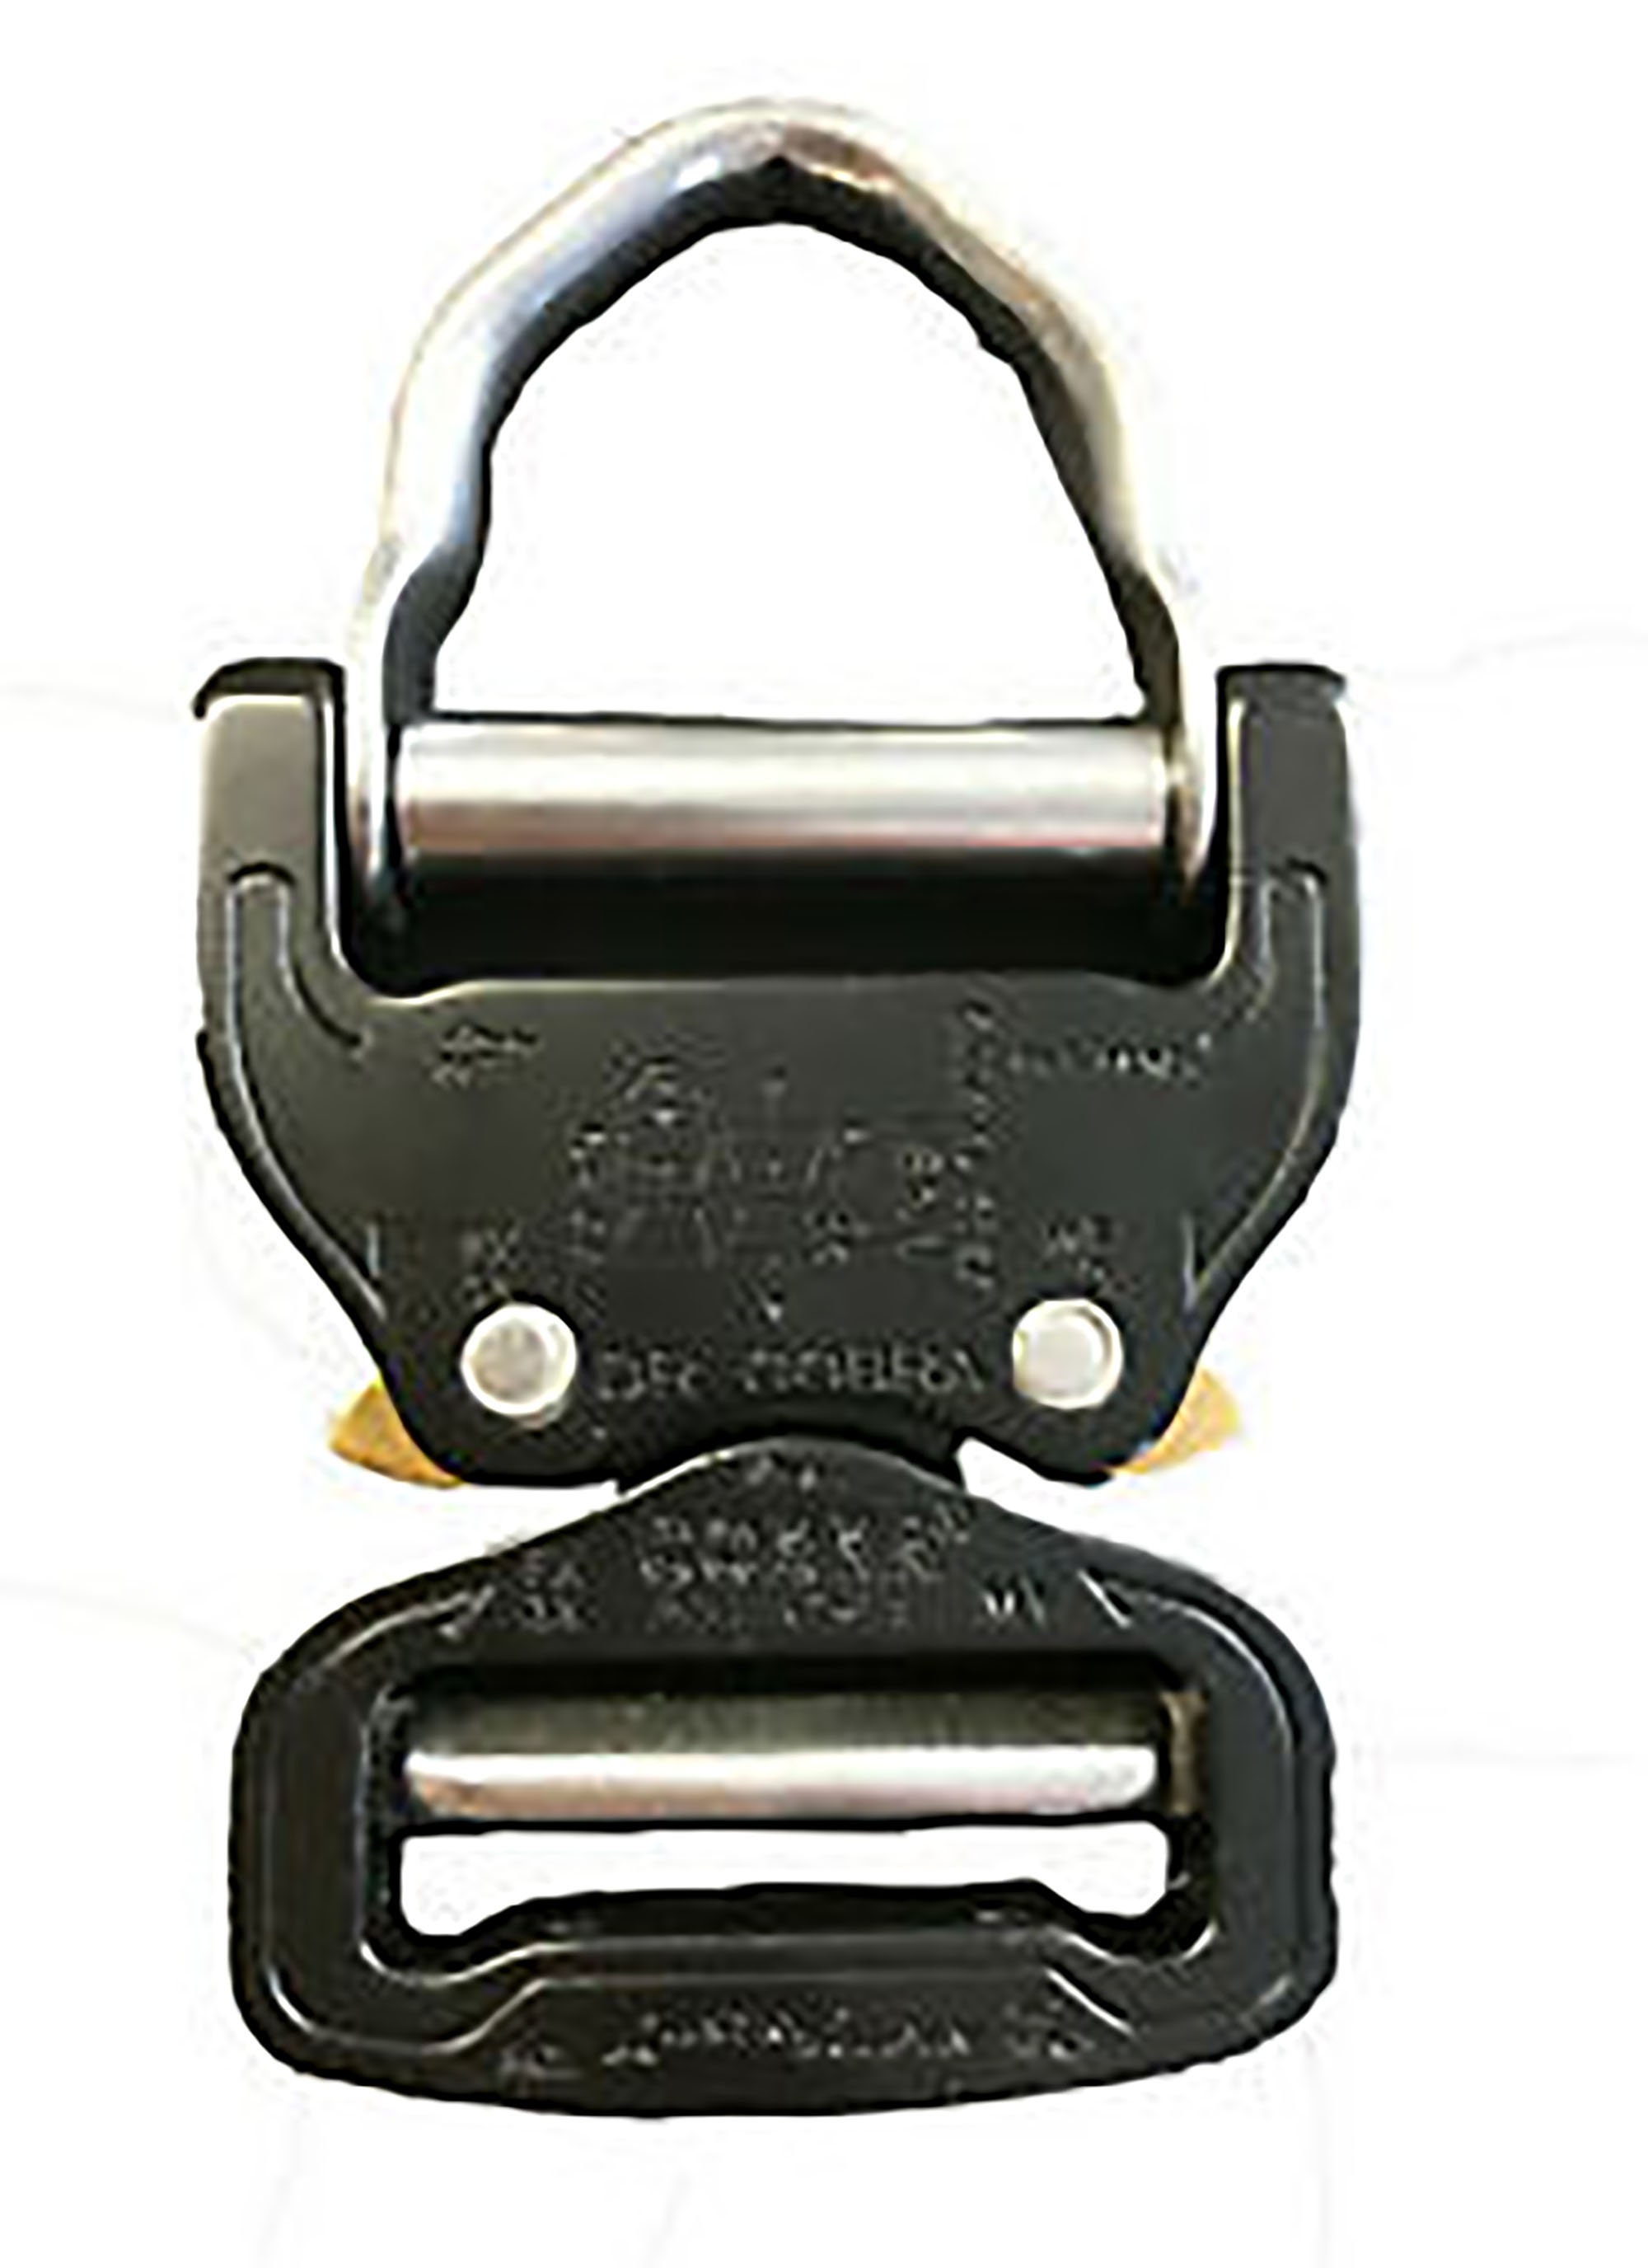 AustriAlpin 45mm / 1.75 Chrome Ansi D Ring Cobra Buckle - FX45AVD